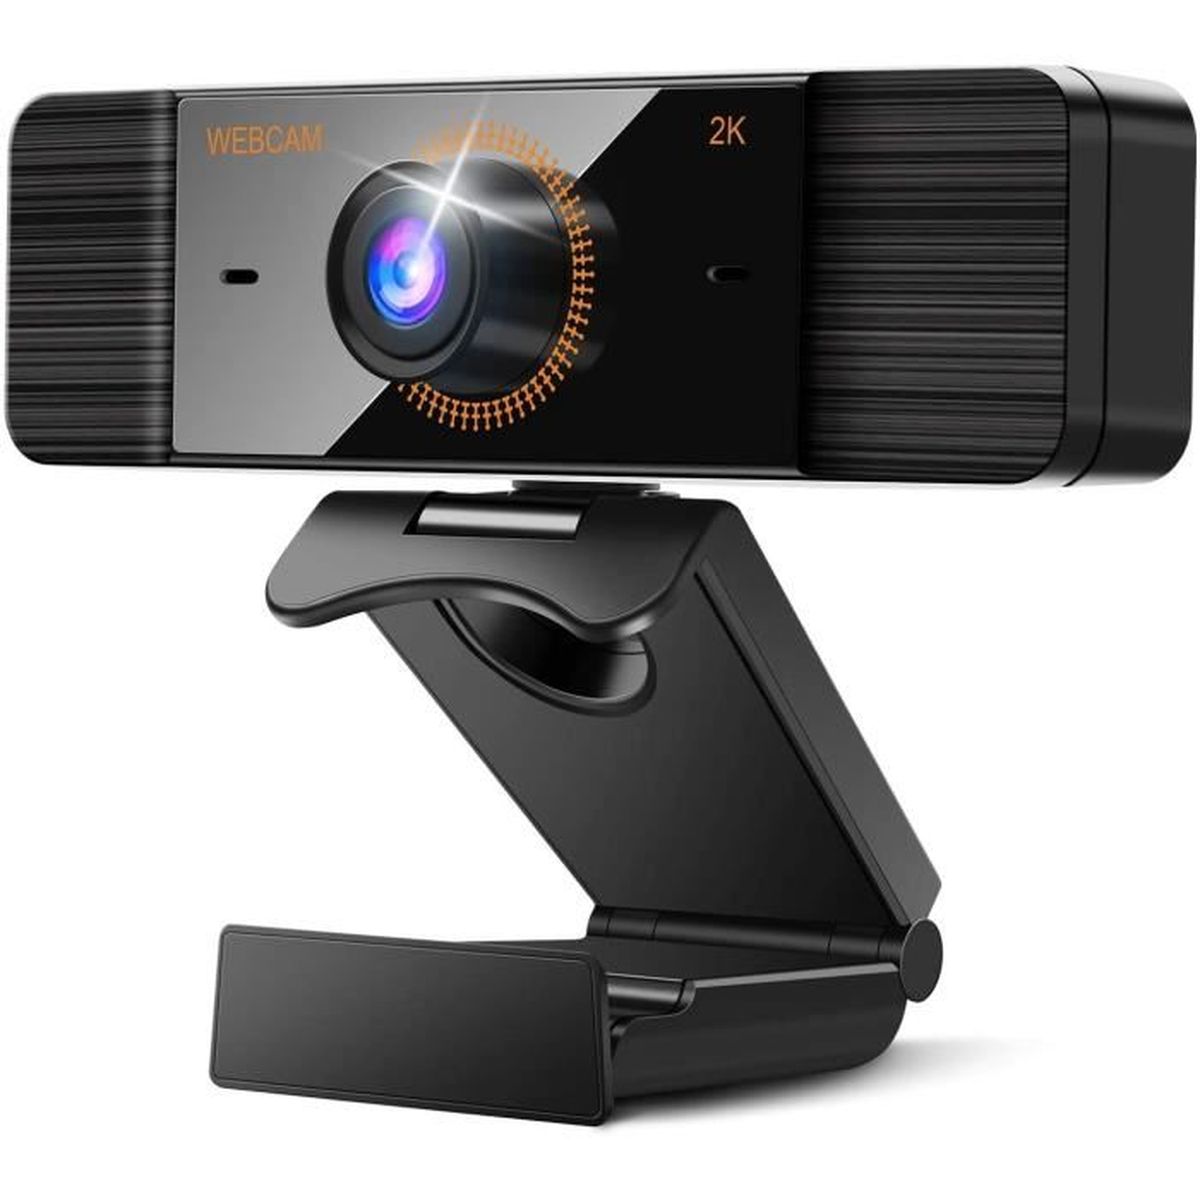 Webcam 2K Microphone Stéréo Létude en Ligne et la Conférence Avec Couvercle de Confidentialité Webcam PC pour la Les Appels Vidéo 4 Millions de pixels Webcam pc avec Auto Focus Plug & Play 